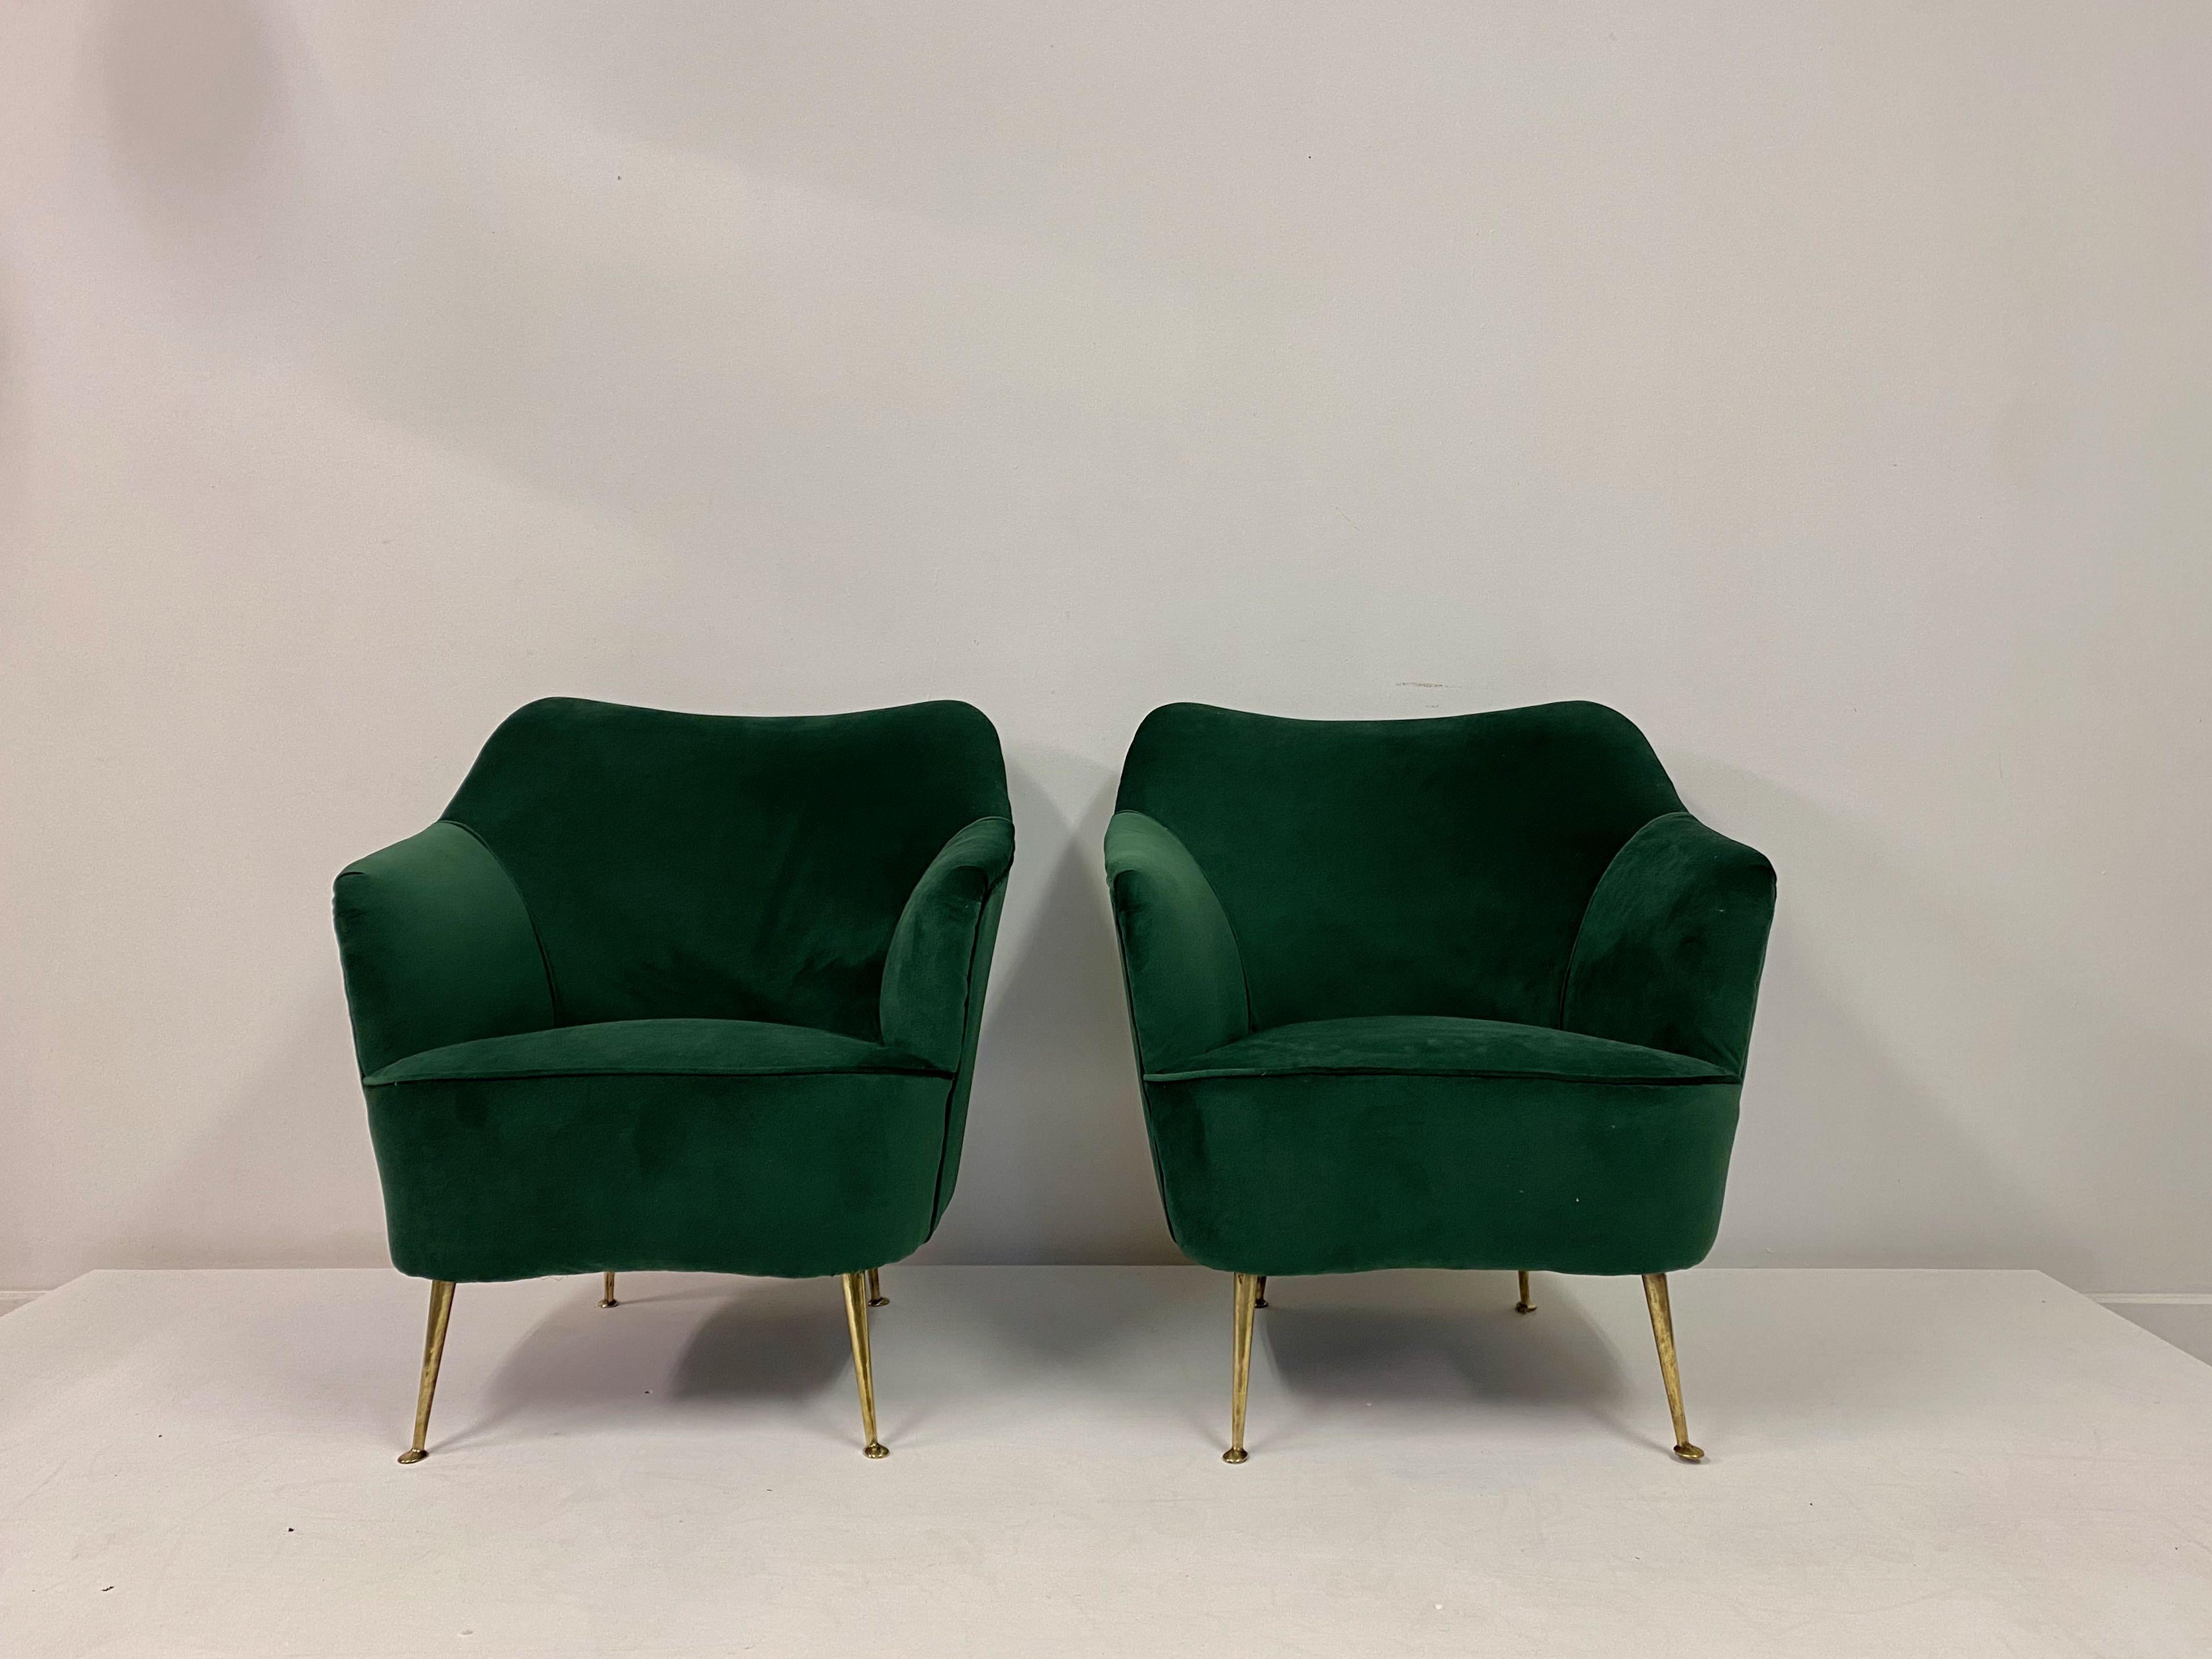 New green velvet upholstery

Brass legs

Measure: Seat height 37cm

Italian 1950s.